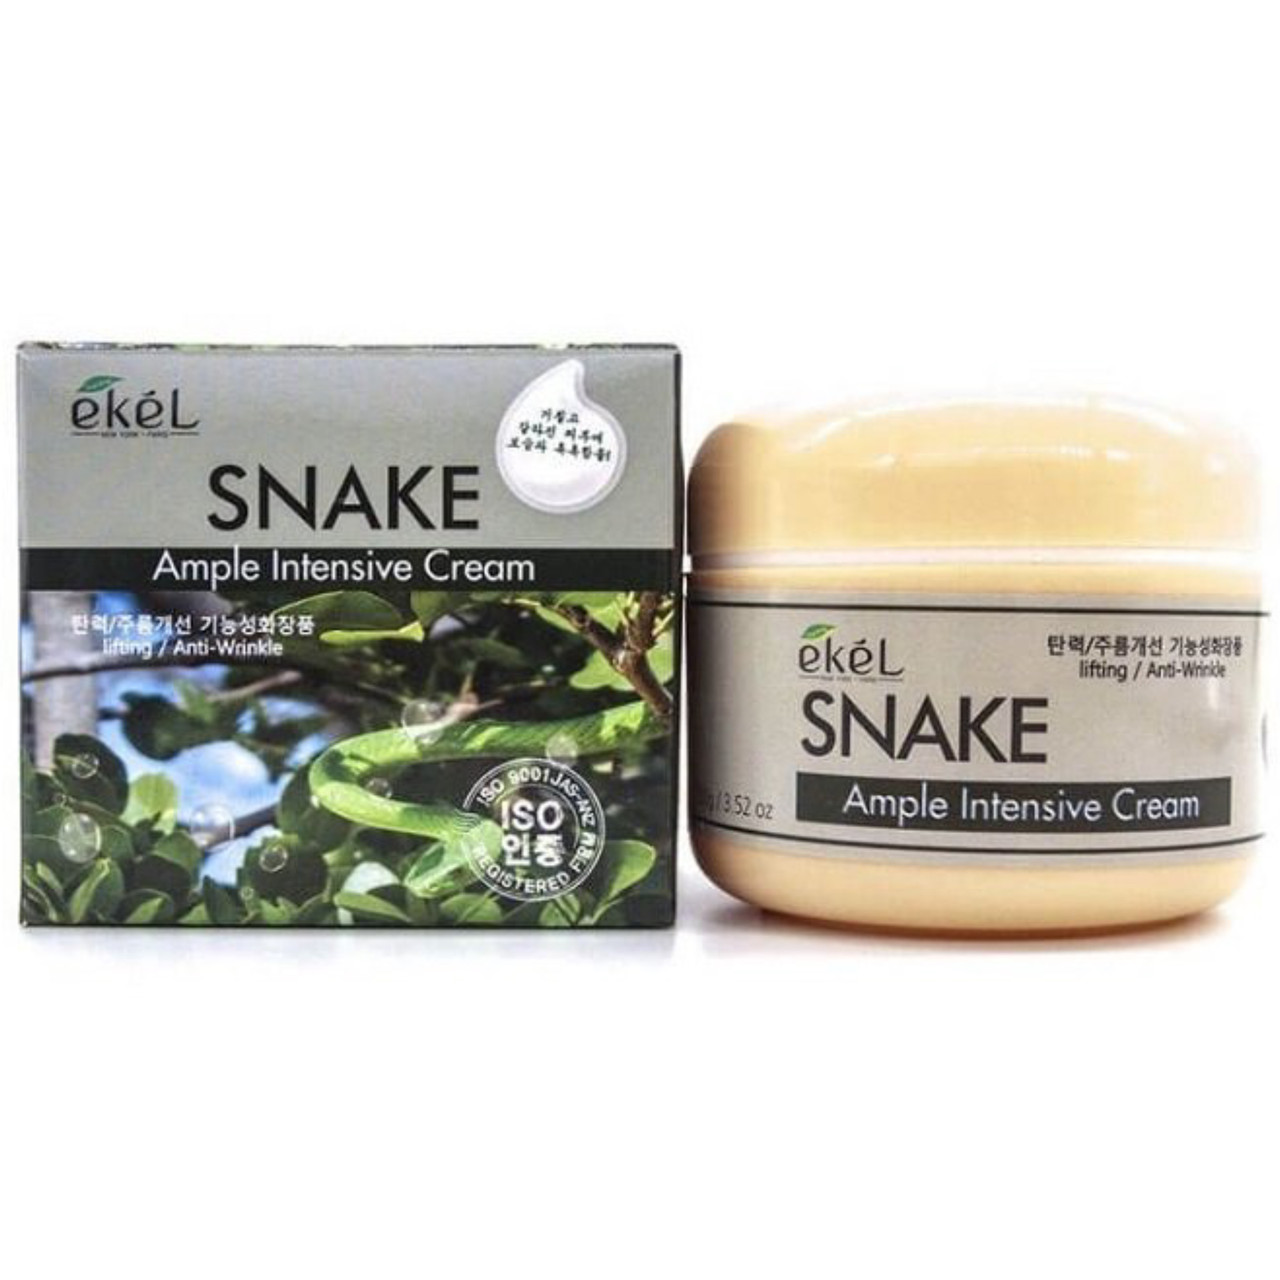 Крем для лица со змеиным ядом Ekel Snake Ample Intensive Cream,100ml